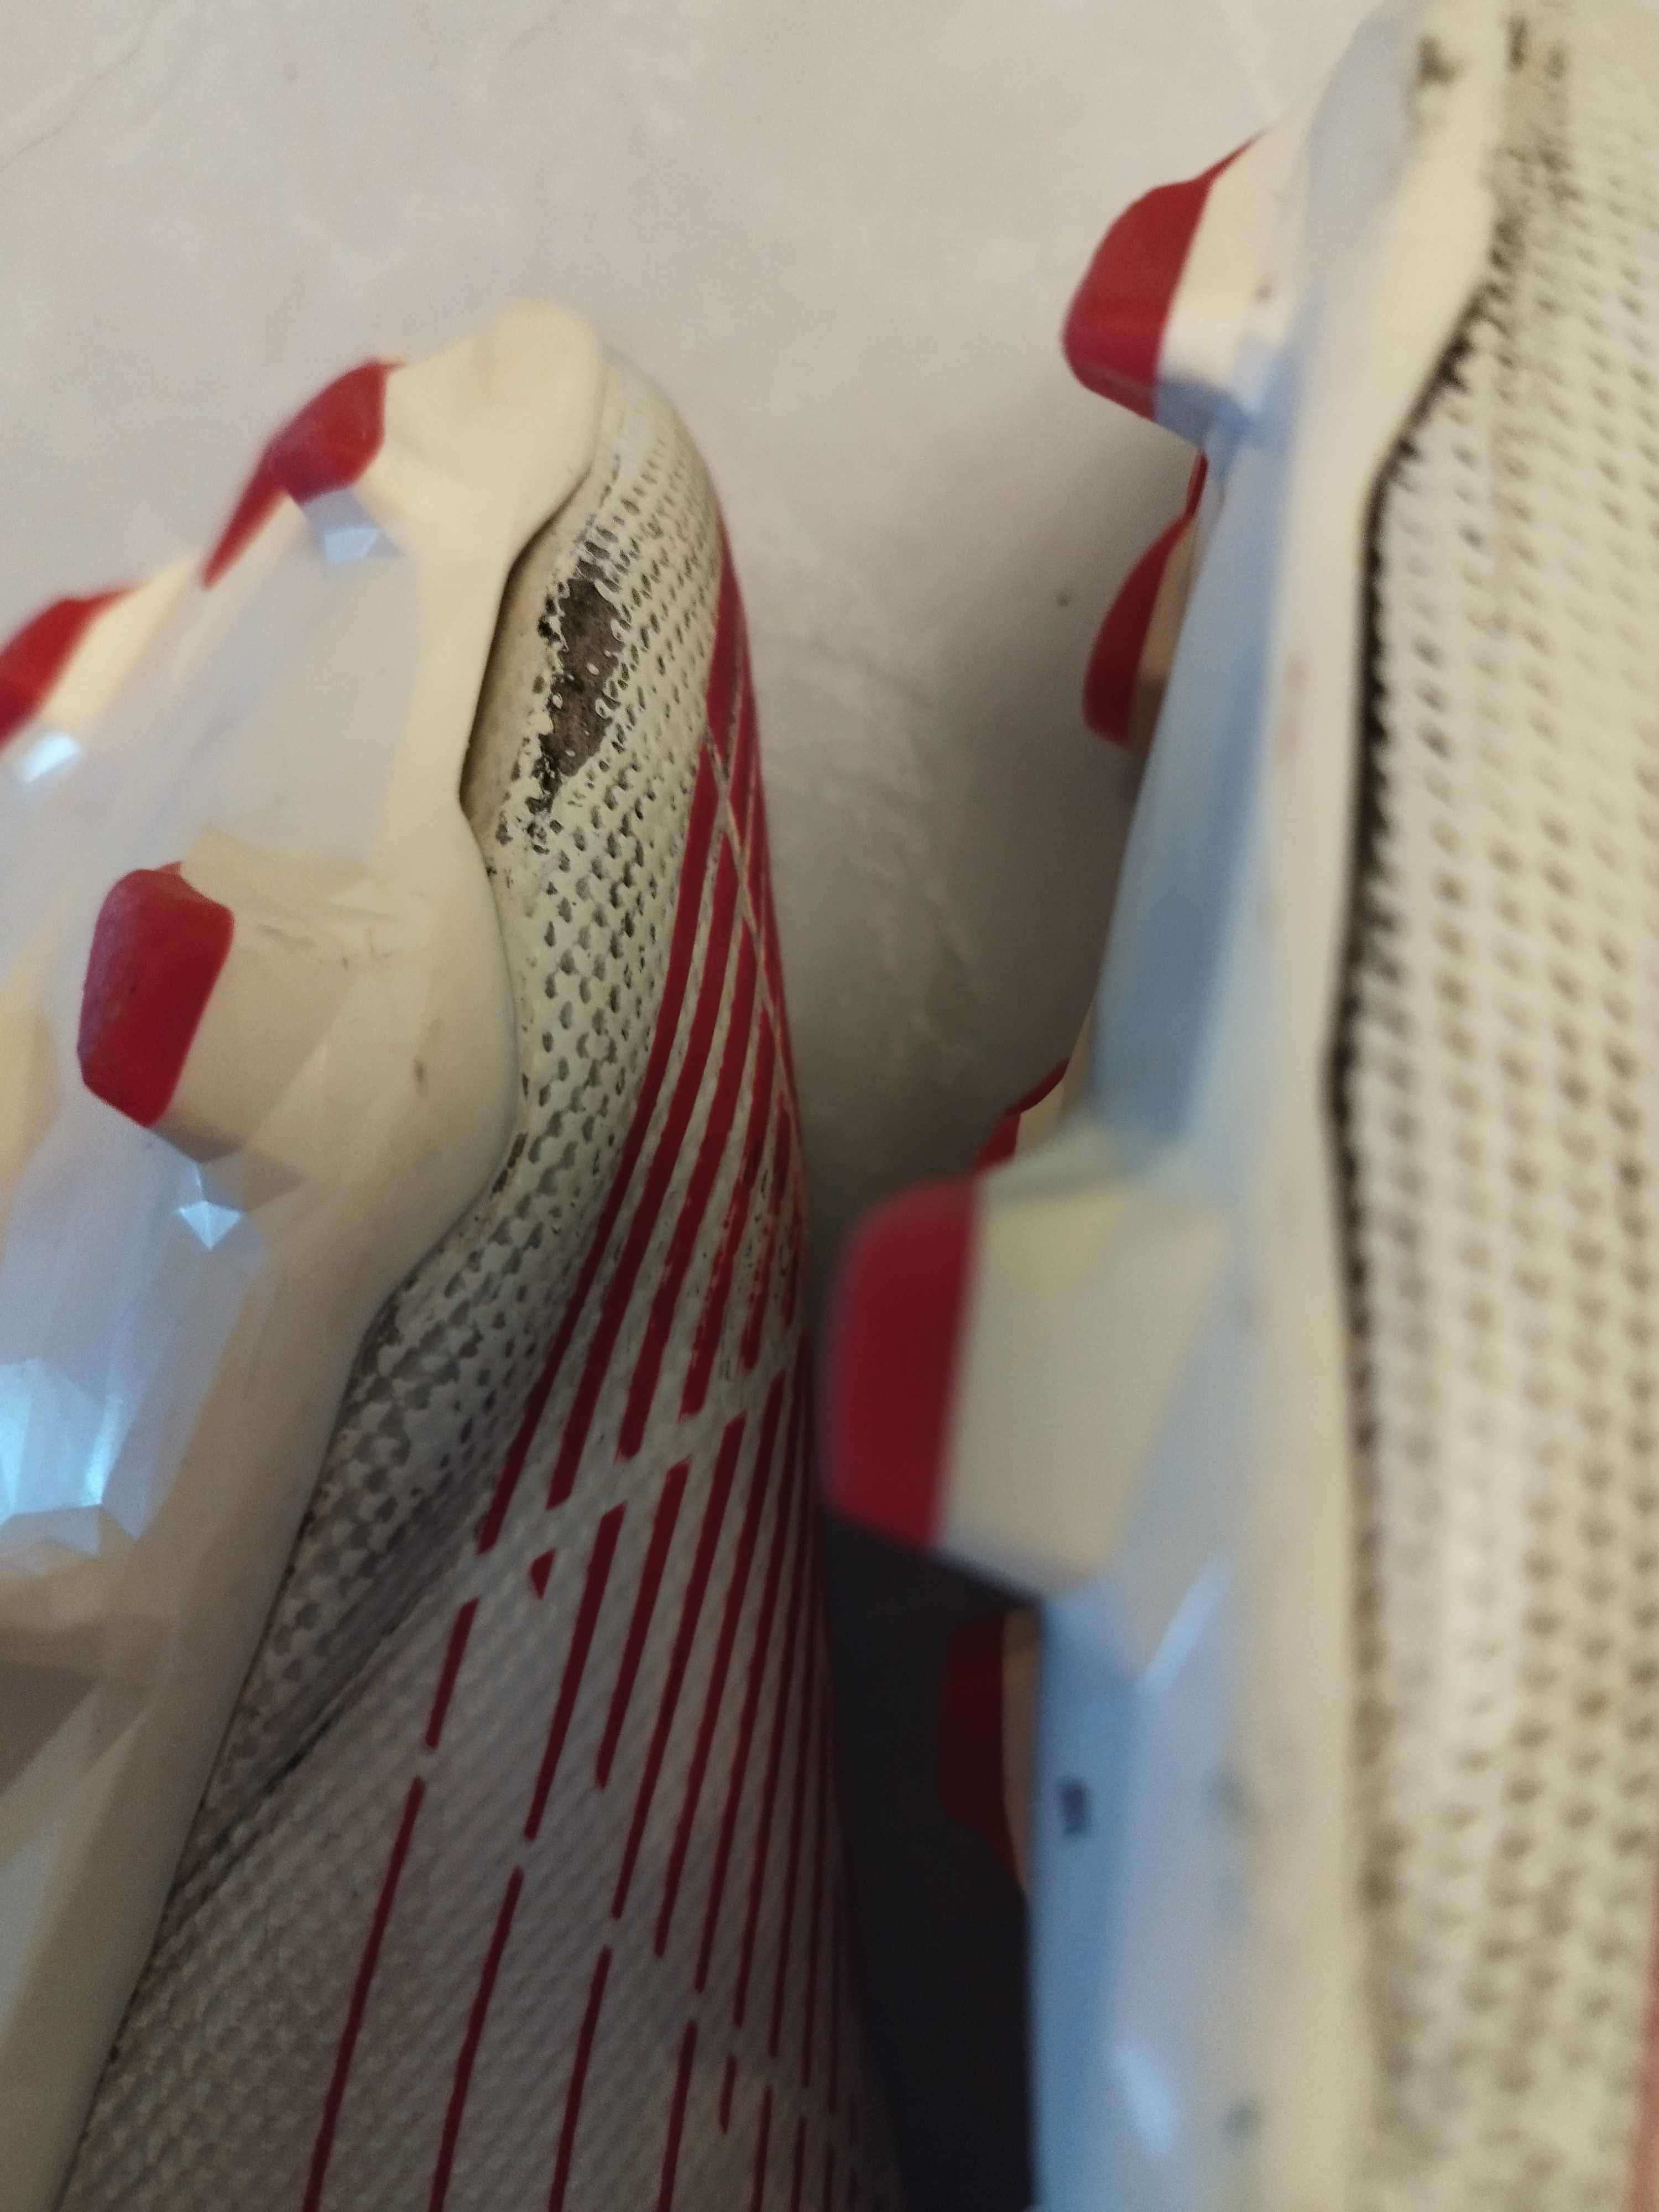 Buty dziecięce korki czerwono białe adidas predator EU 25